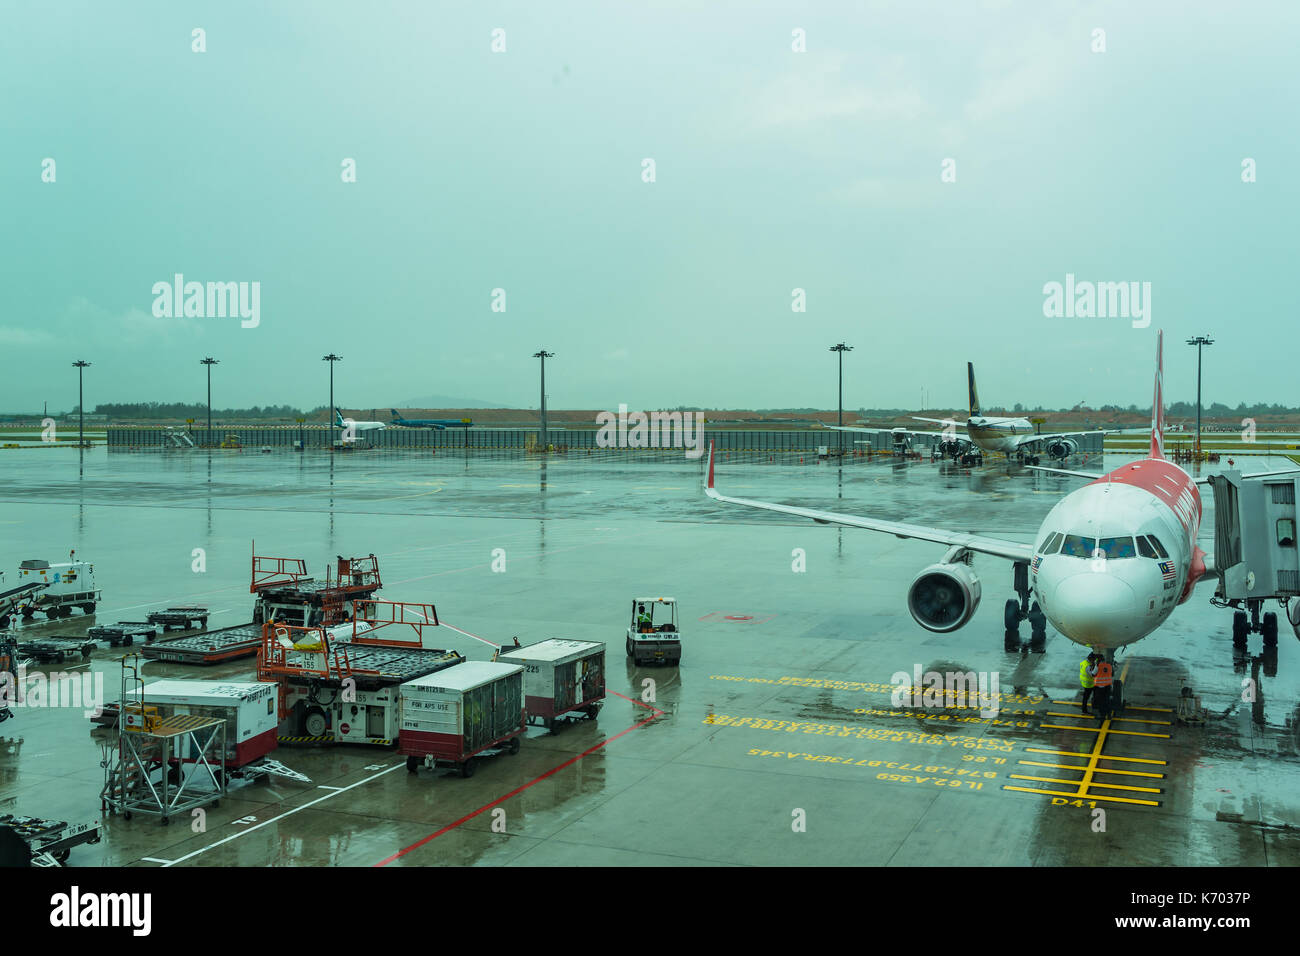 Singapur - 12. August 2017: Flughafen Changi Jetway für boarding Passagiere das Flugzeug im Regen Tag angebracht, einem Flugzeug in airpo Stationär Stockfoto